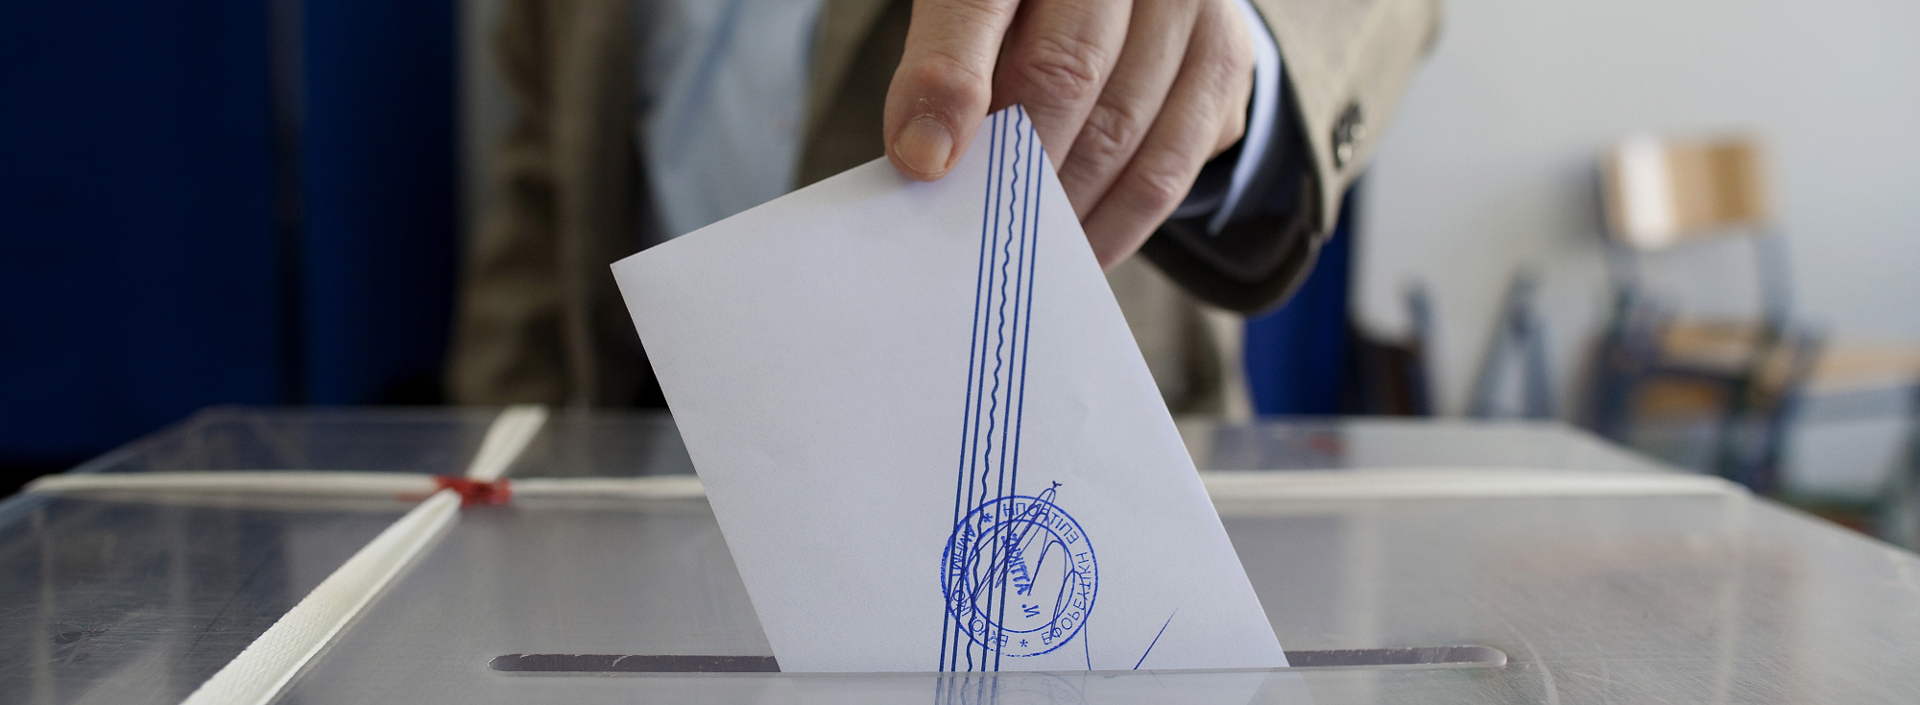 Αποτελέσματα Εθνικών Εκλογών 2019: Oι 3 βουλευτές που εκλέγονται στον νομό Ροδόπης